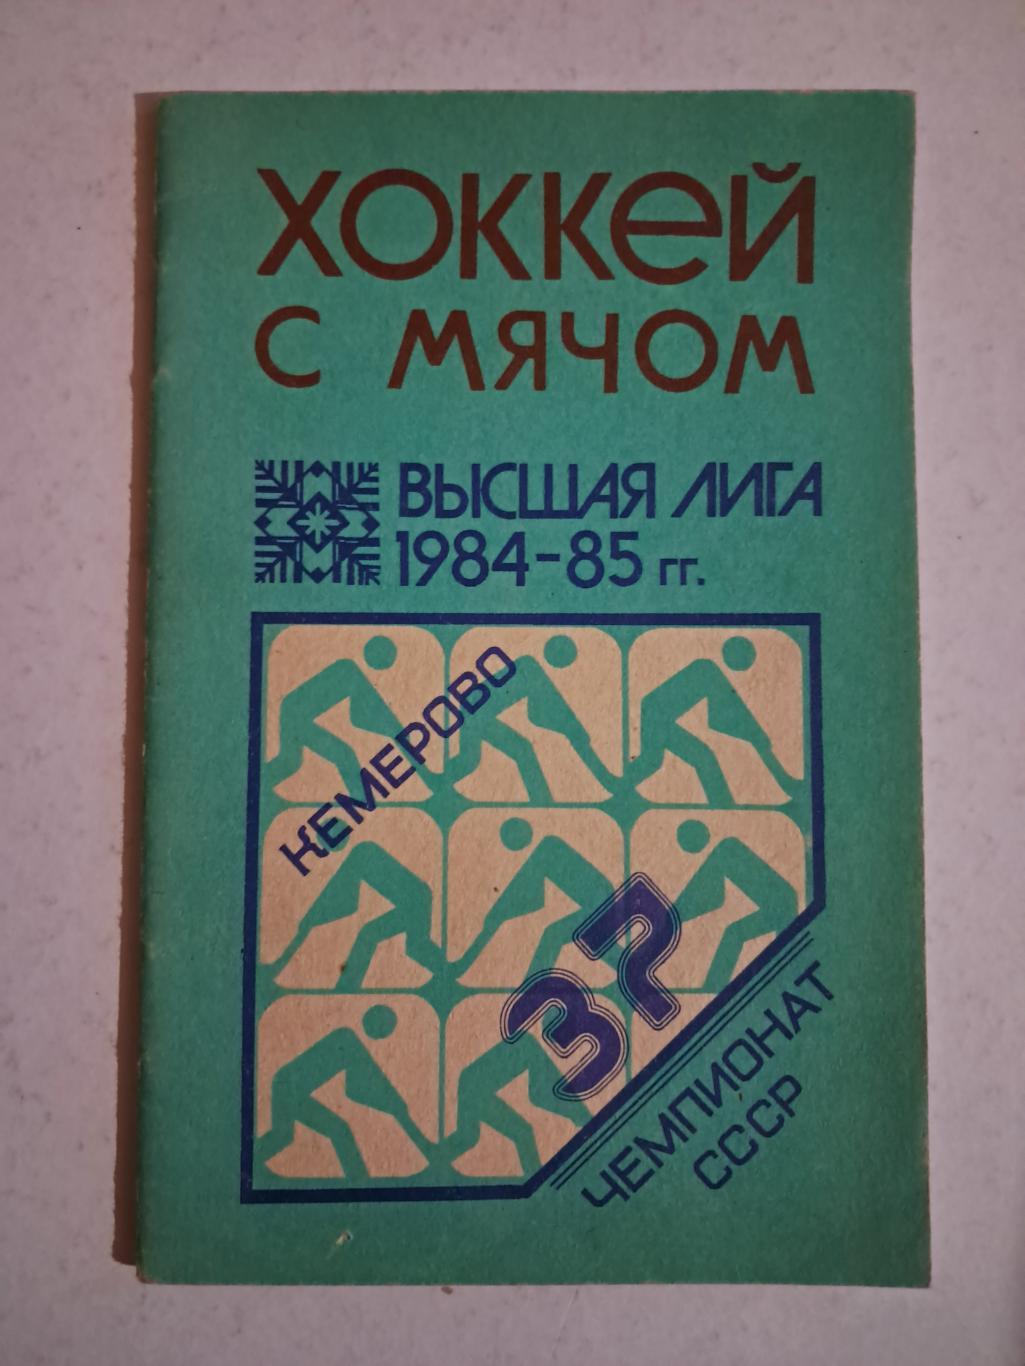 Календарь-справочник по хоккею с мячом Кемерово 1984/85